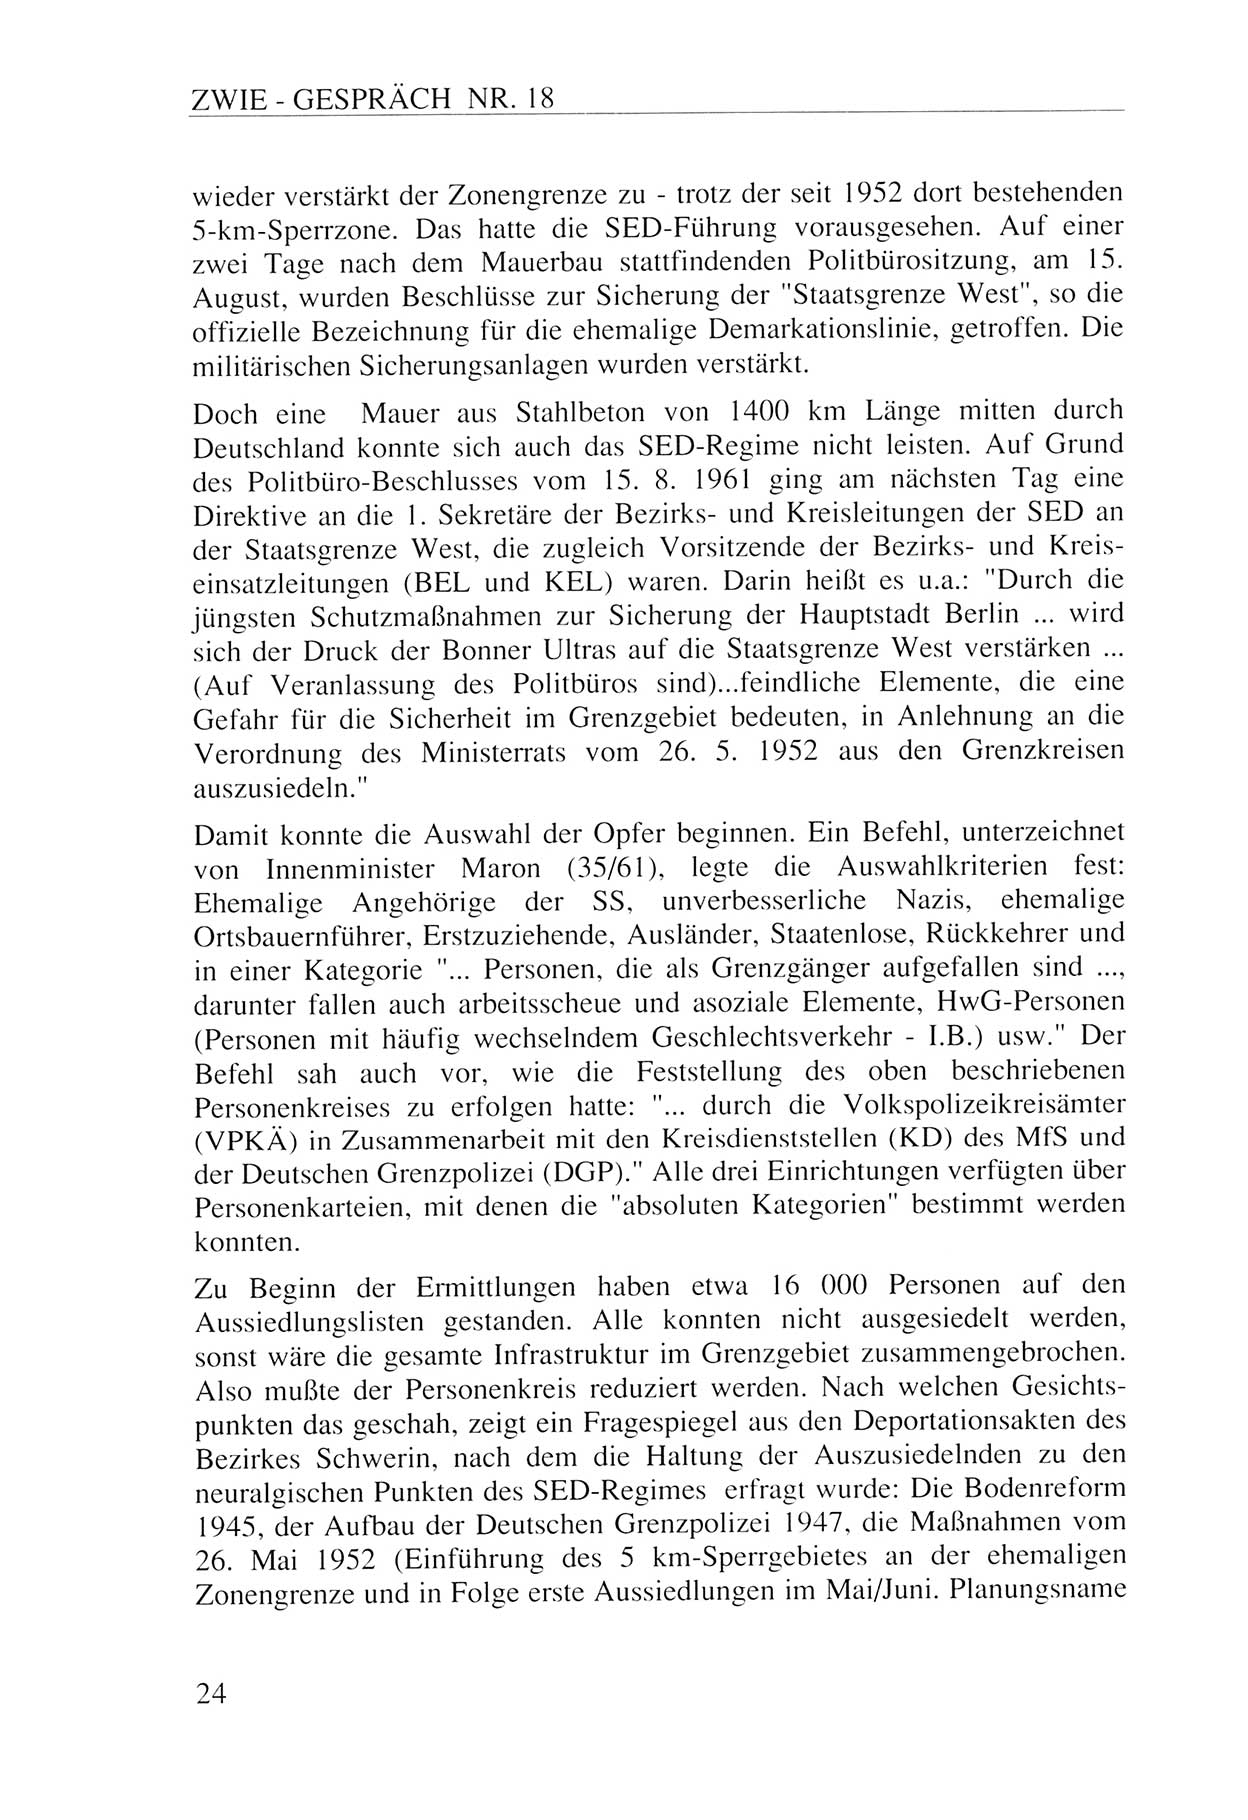 Zwie-Gespräch, Beiträge zur Aufarbeitung der Staatssicherheits-Vergangenheit [Deutsche Demokratische Republik (DDR)], Ausgabe Nr. 18, Berlin 1993, Seite 24 (Zwie-Gespr. Ausg. 18 1993, S. 24)